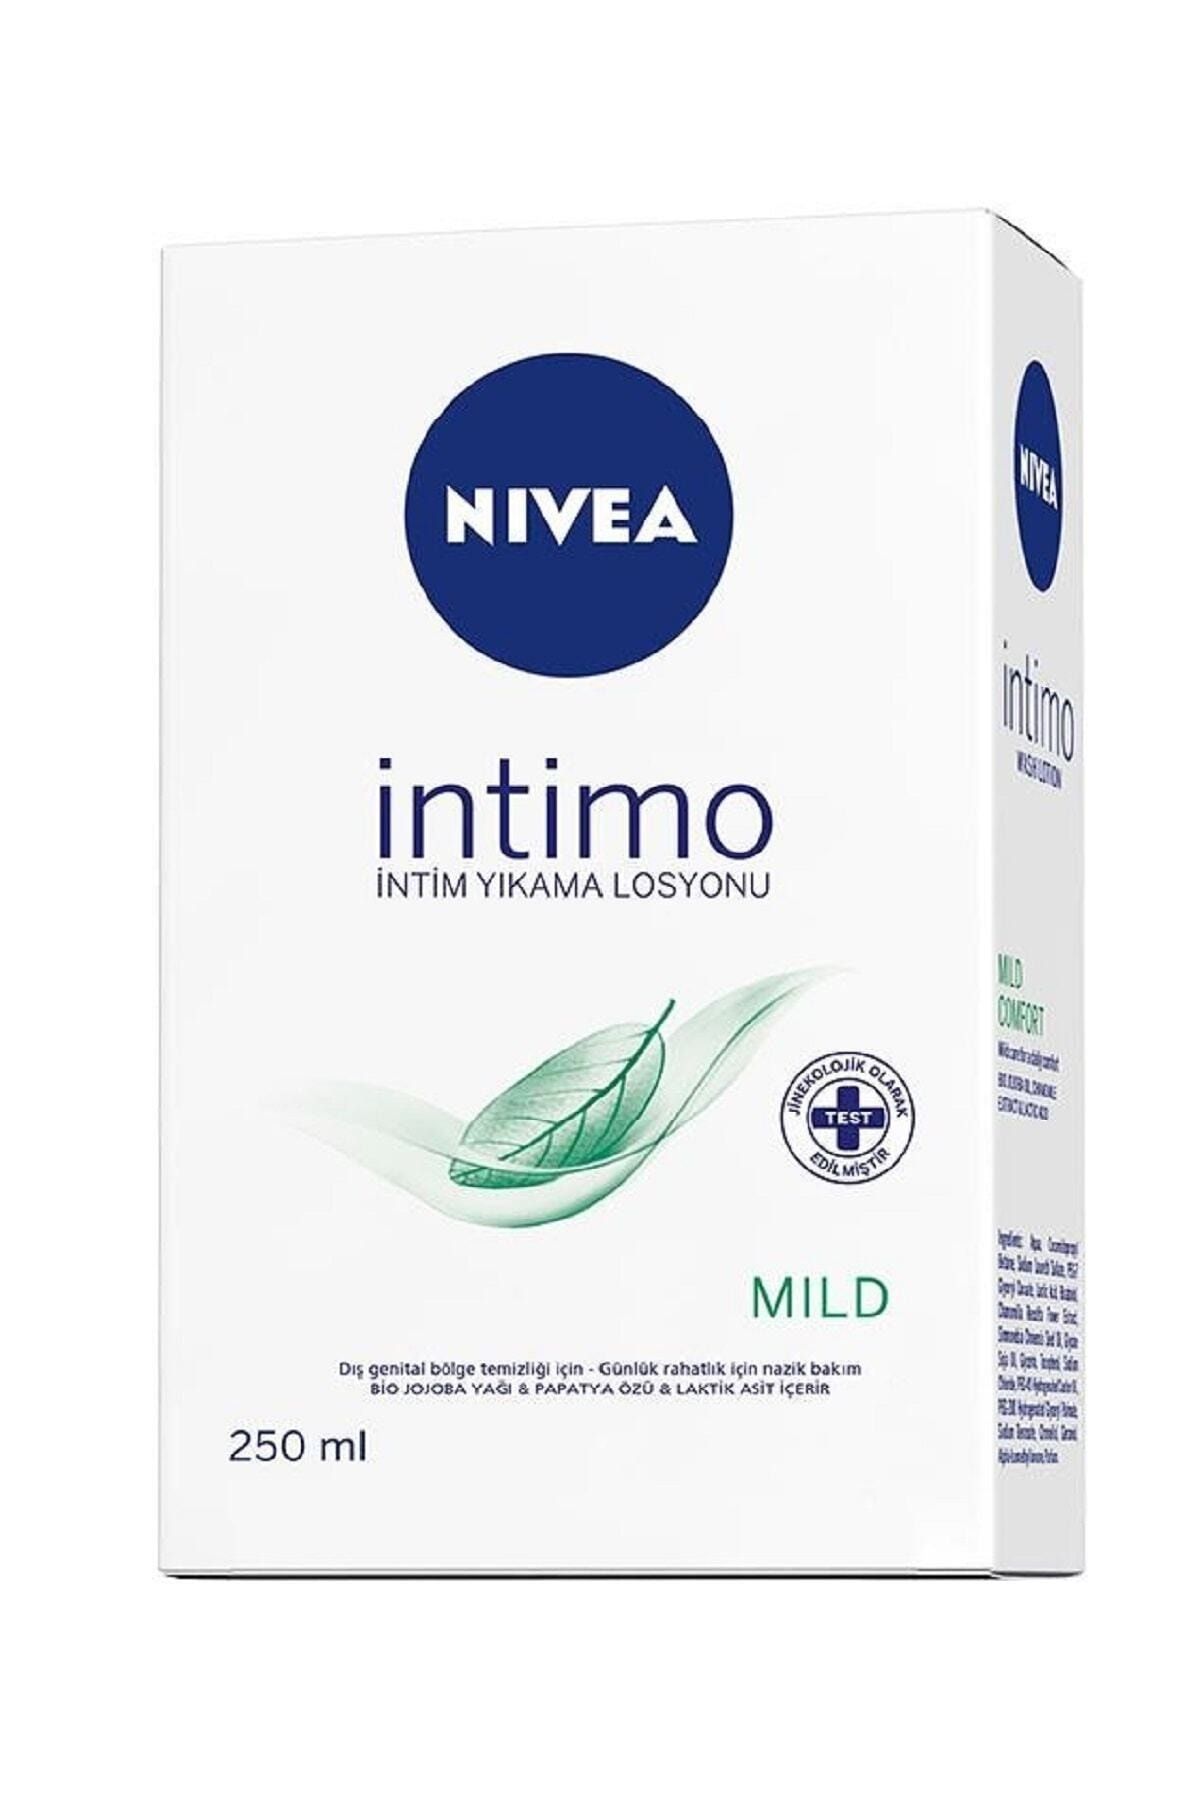 NIVEA Intimo Mild Confort Genital Bölge Yıkama Ve Temizleme Losyonu 250-ml